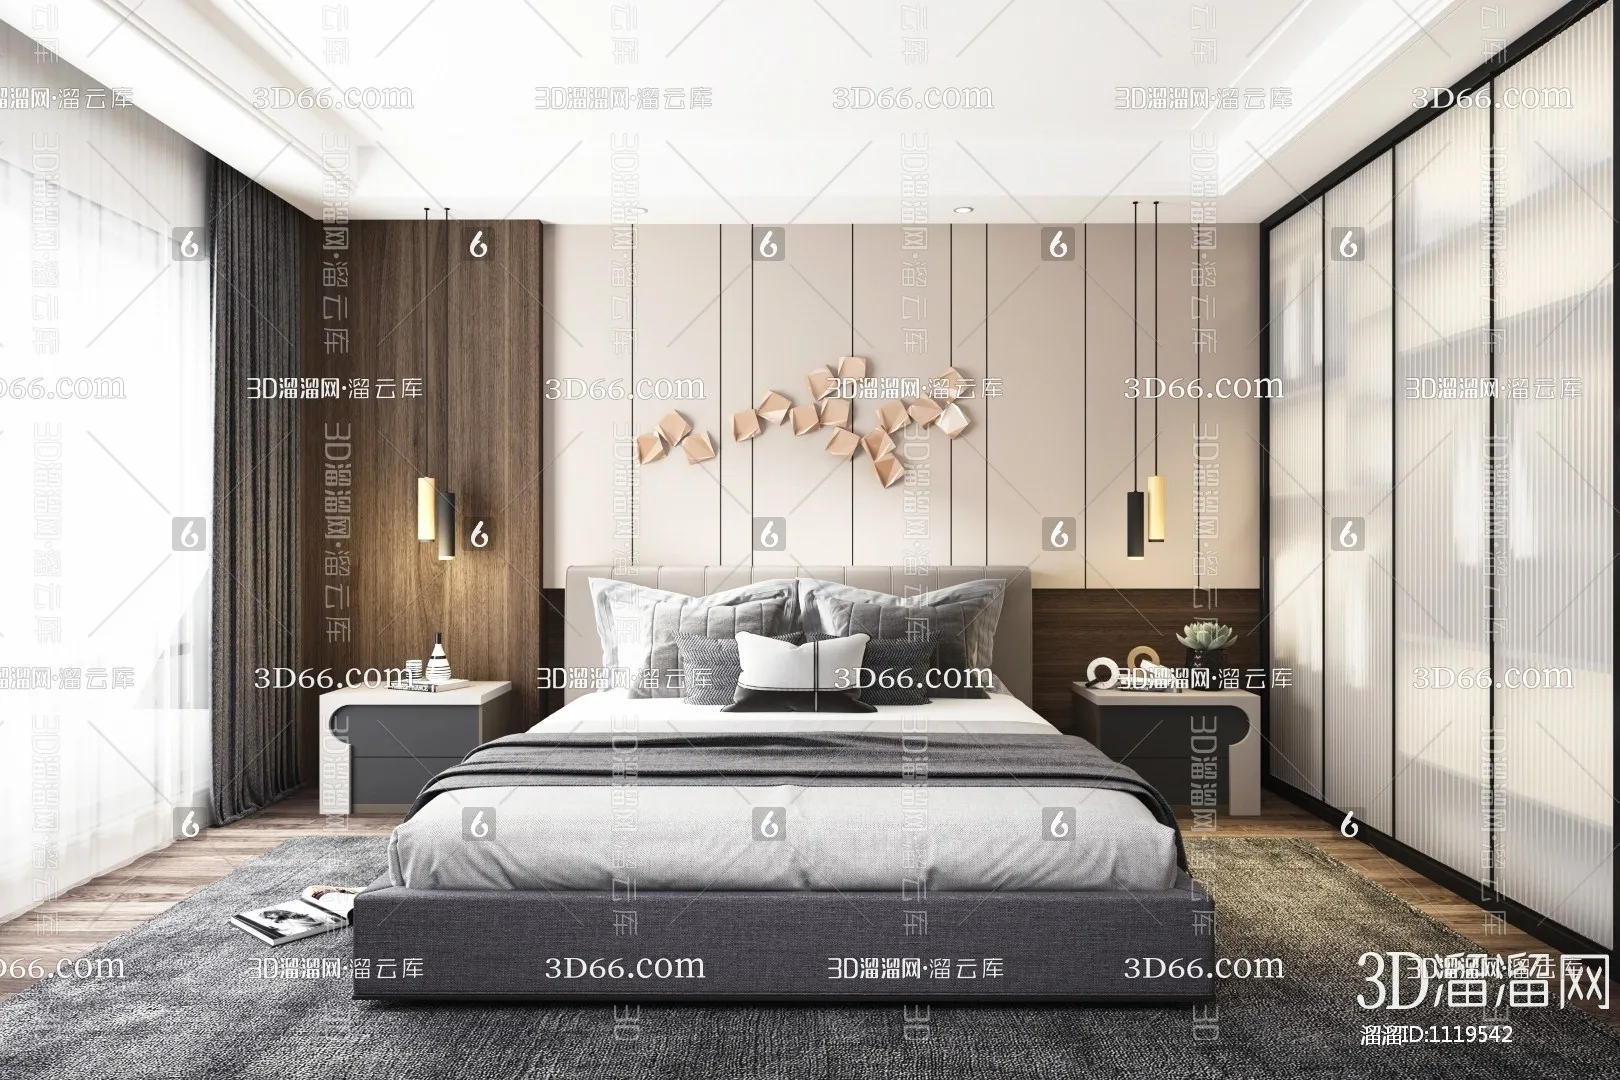 Bedroom 3D Scenes – 0180